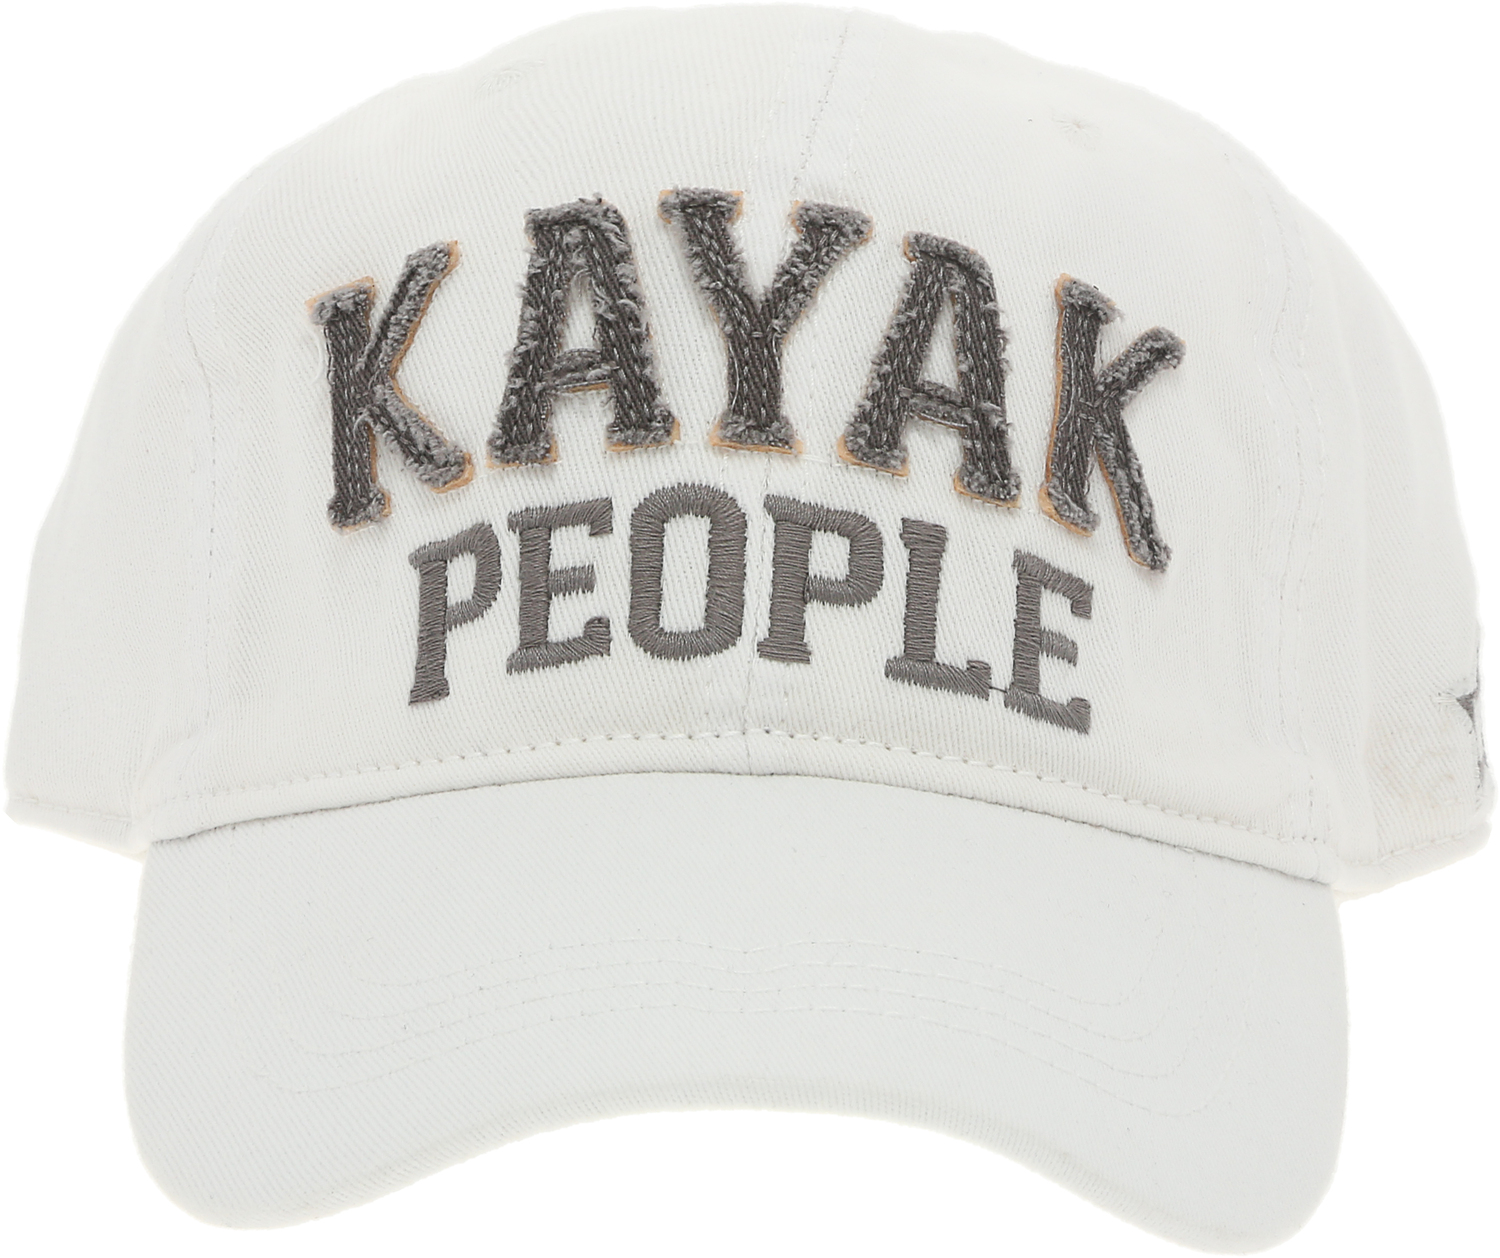 Kayak People by We People - Kayak People - White Adjustable Hat